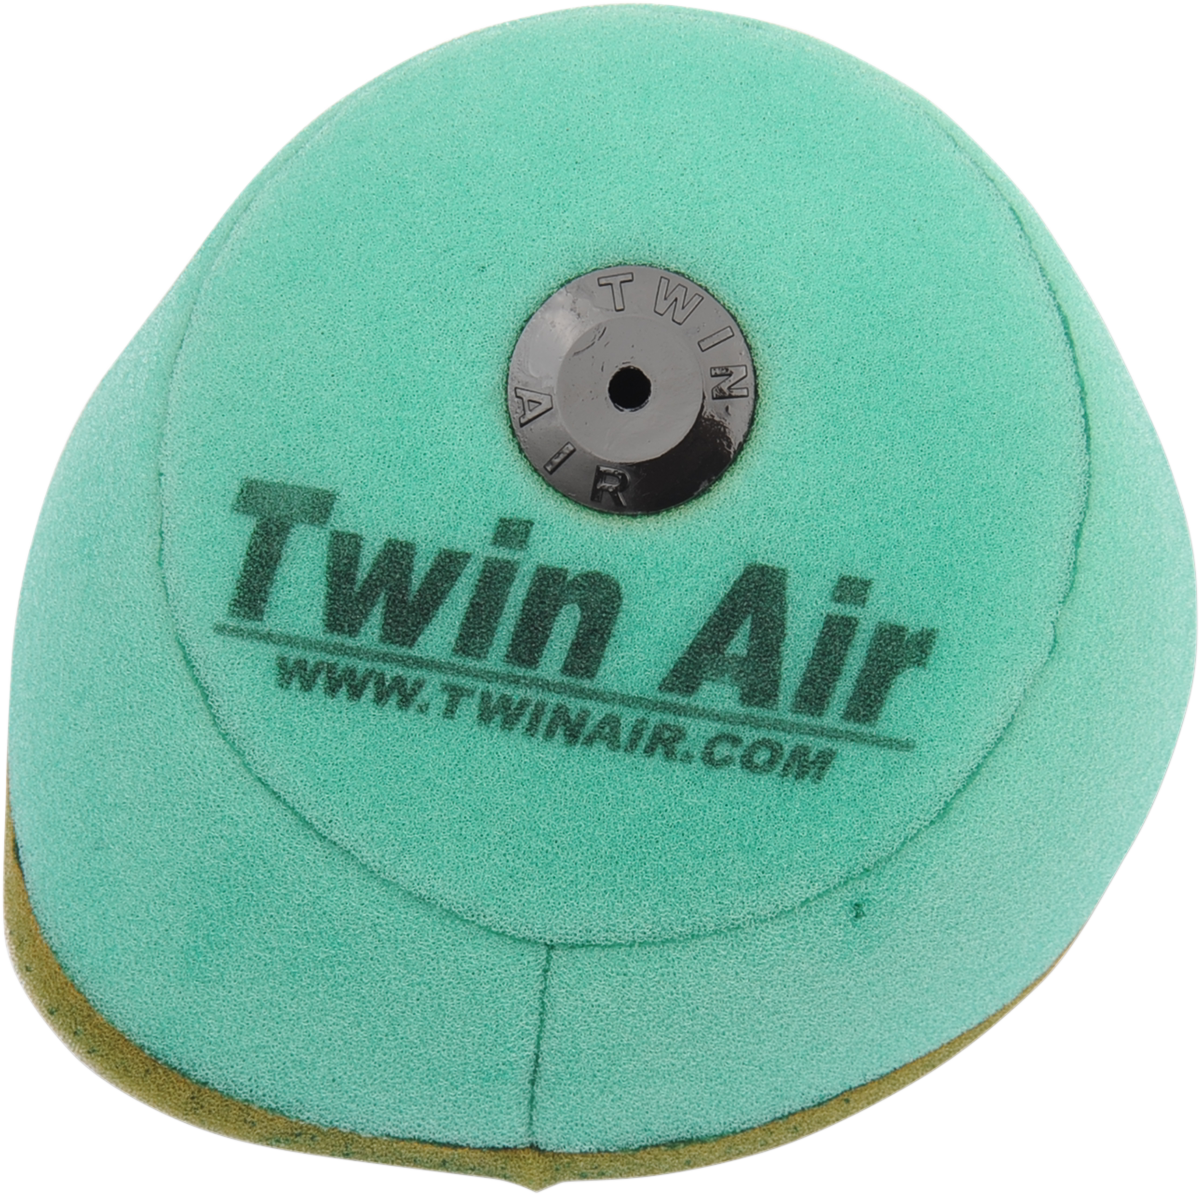 Filtro de aire preengrasado TWIN AIR 152215X